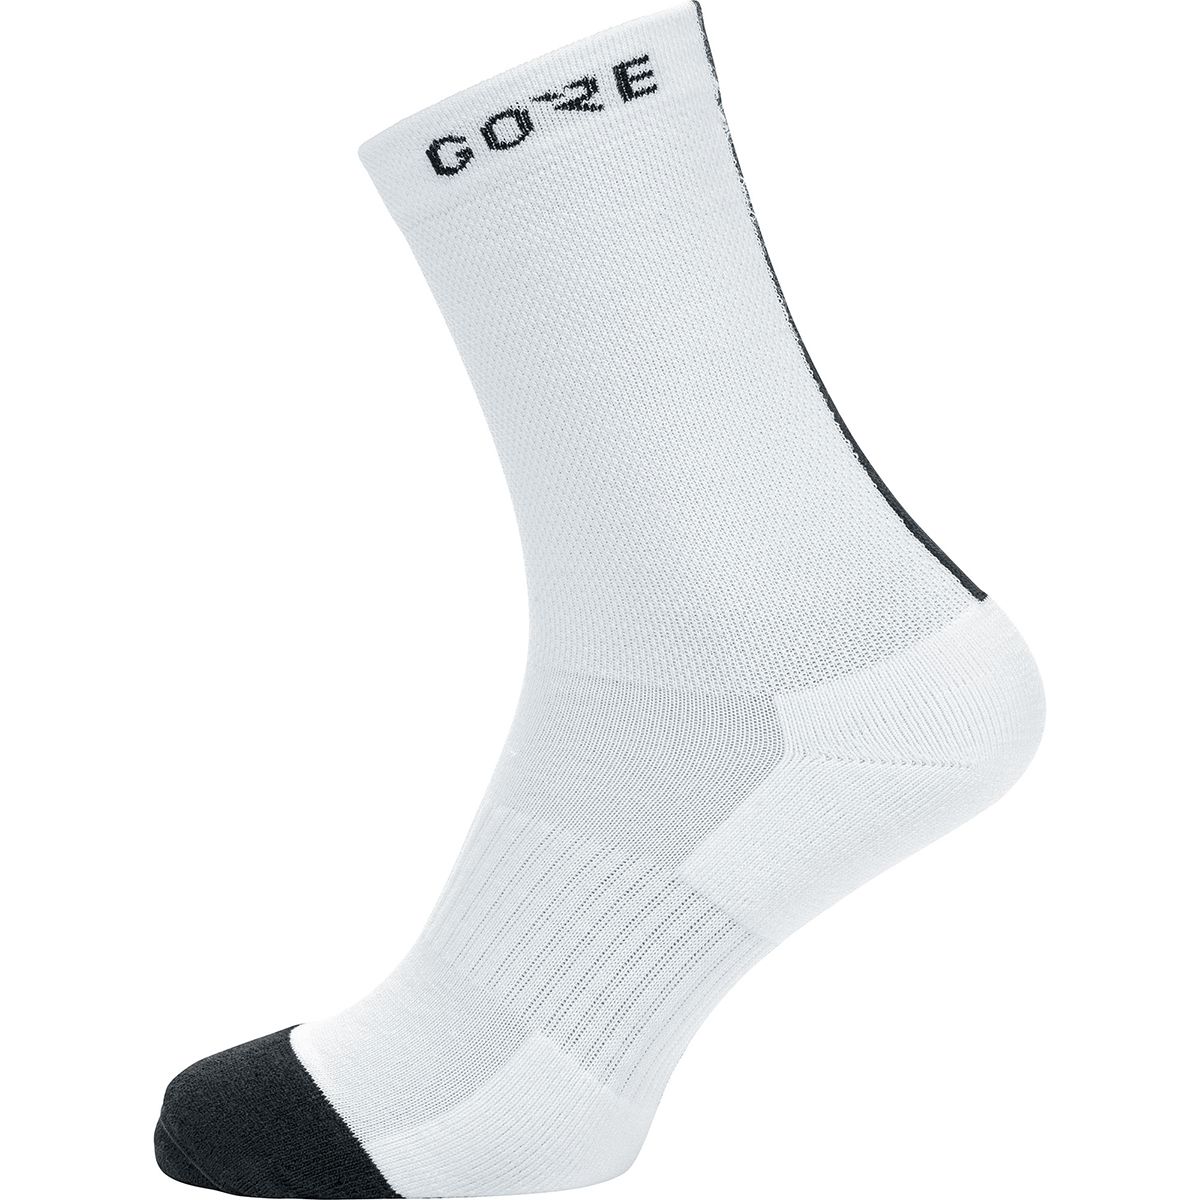 GOREWEAR Thermo Mid Sock White/Black, 8.0-9.5 - Men's